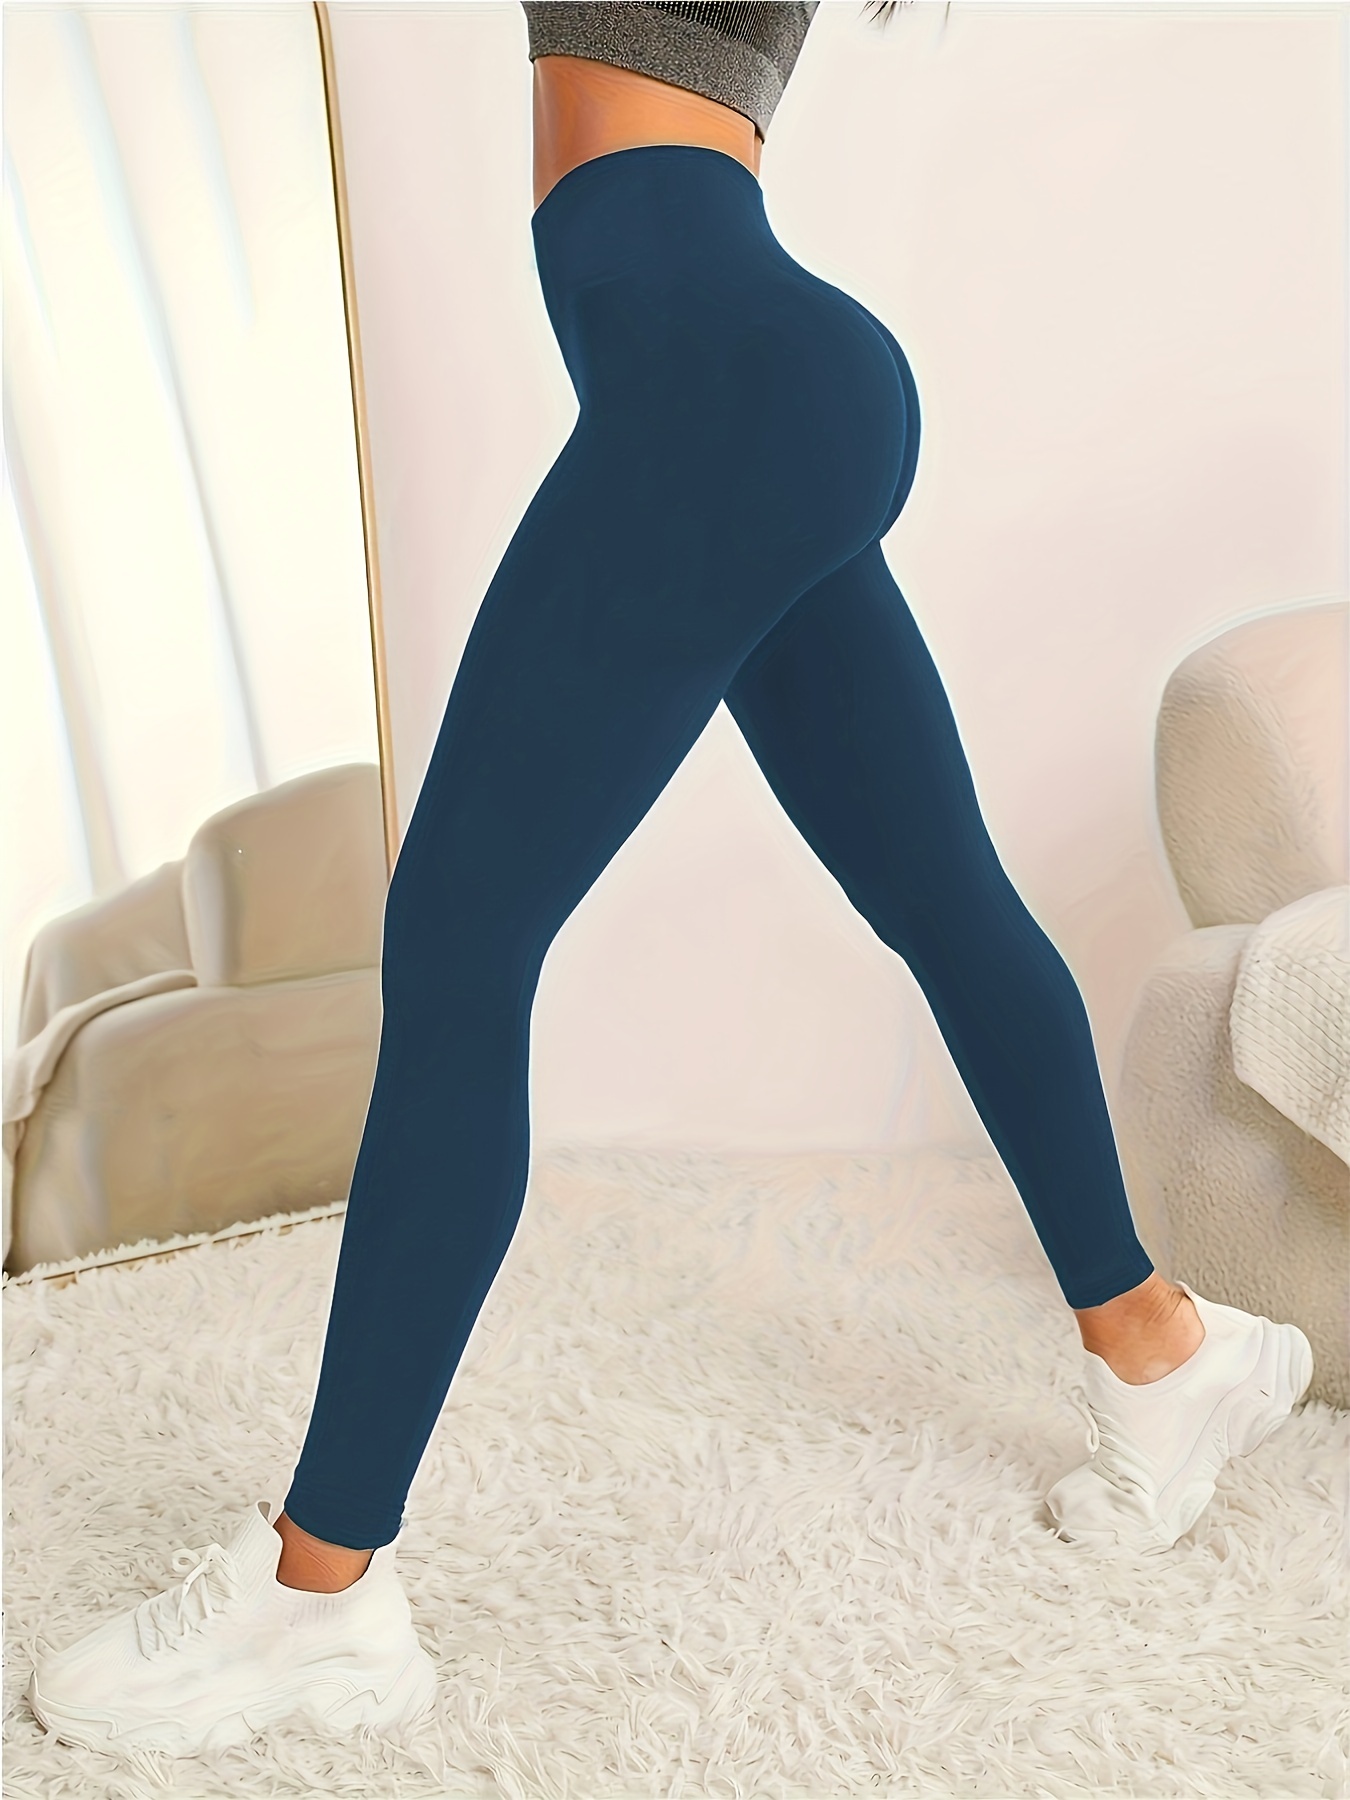 ALAN-TSANG Yoga Pants Yoga Pants Women High Waist Leggings Sports